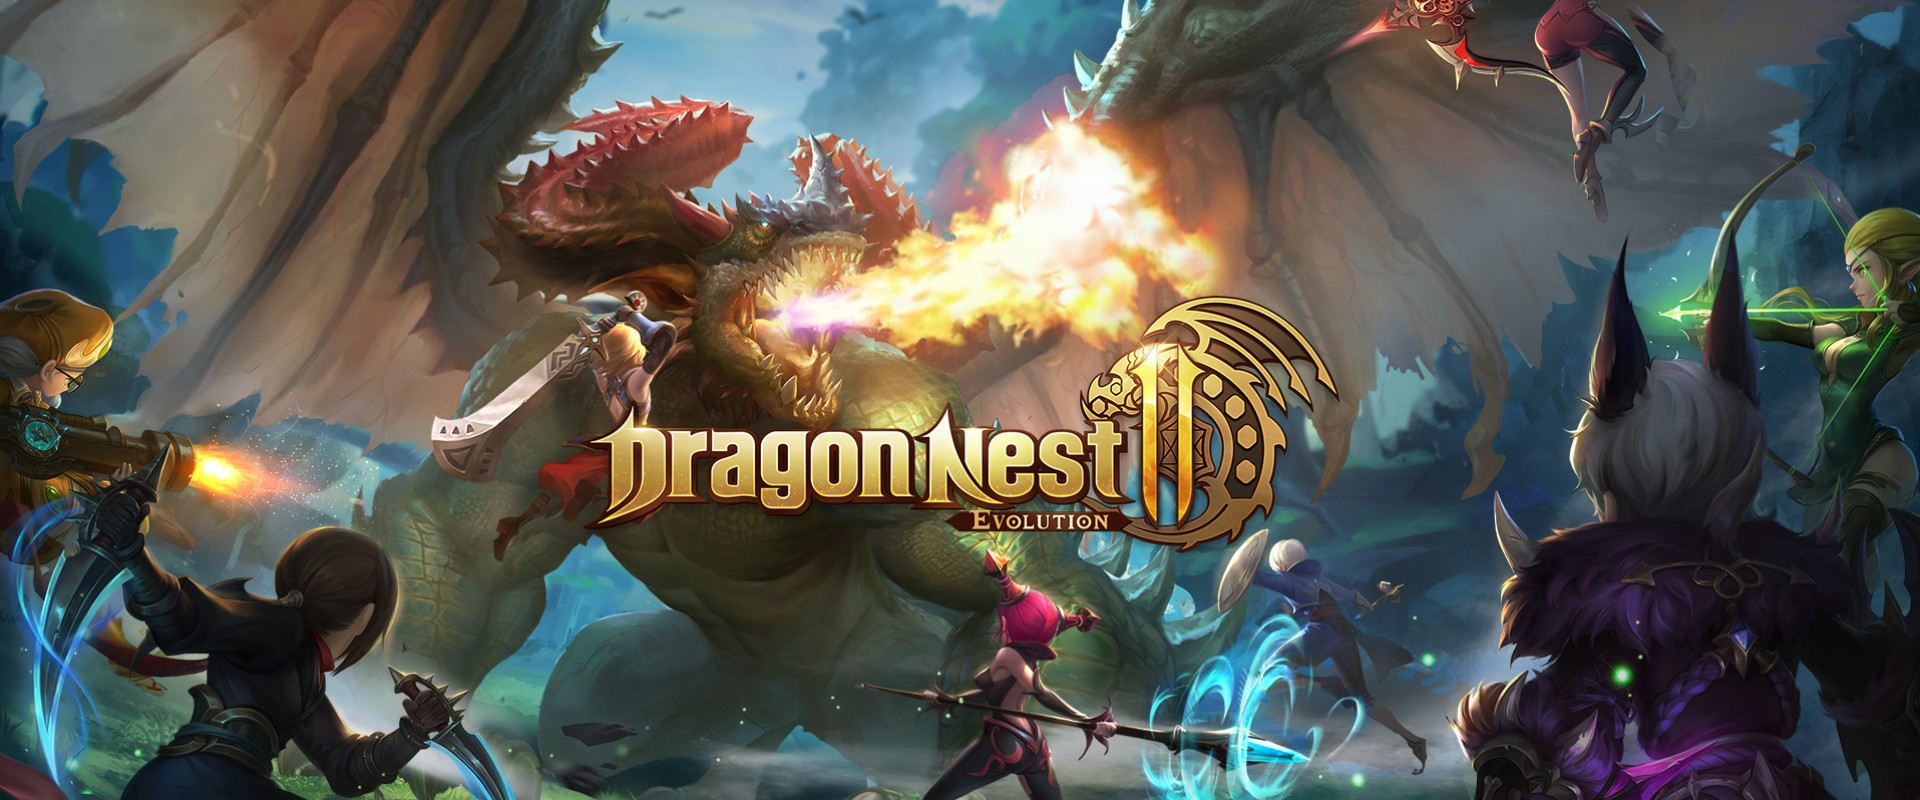 เล่น Dragon Nest 2 Evolution-ฟรีบน-pc-ด้วย-NOXPLAYER-จอใหญ่-สุดเจ๋ง-free android emulator_noxplayer_1920x800